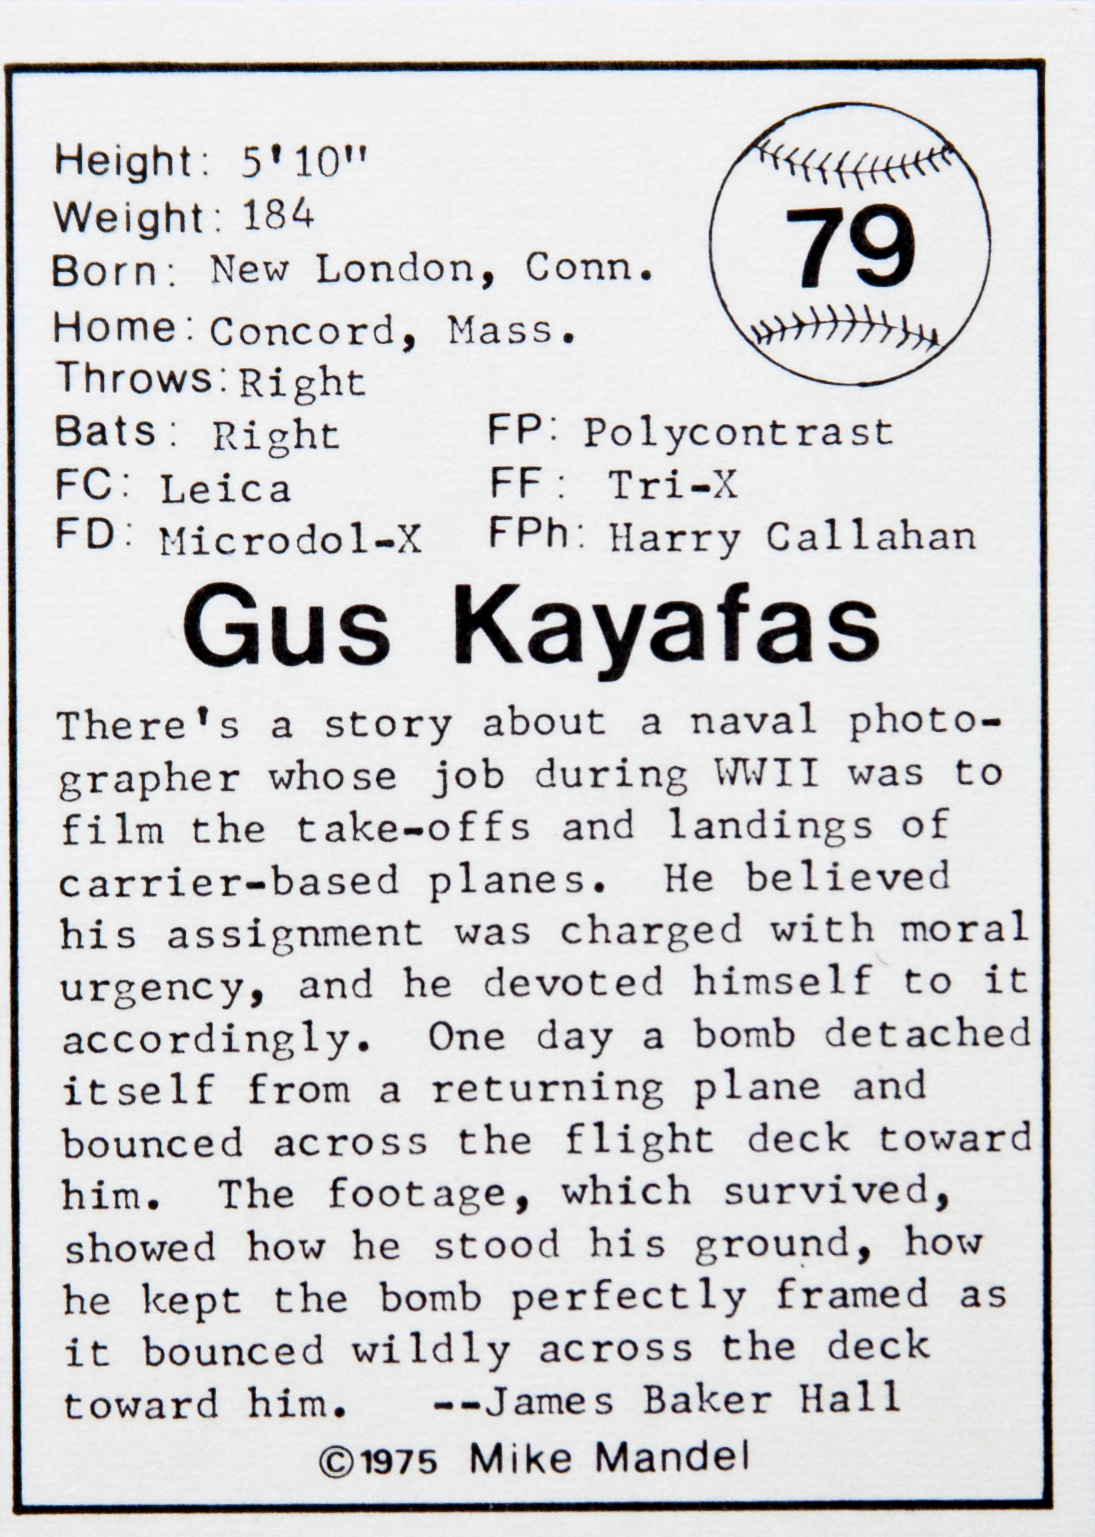 Gus Kayafas